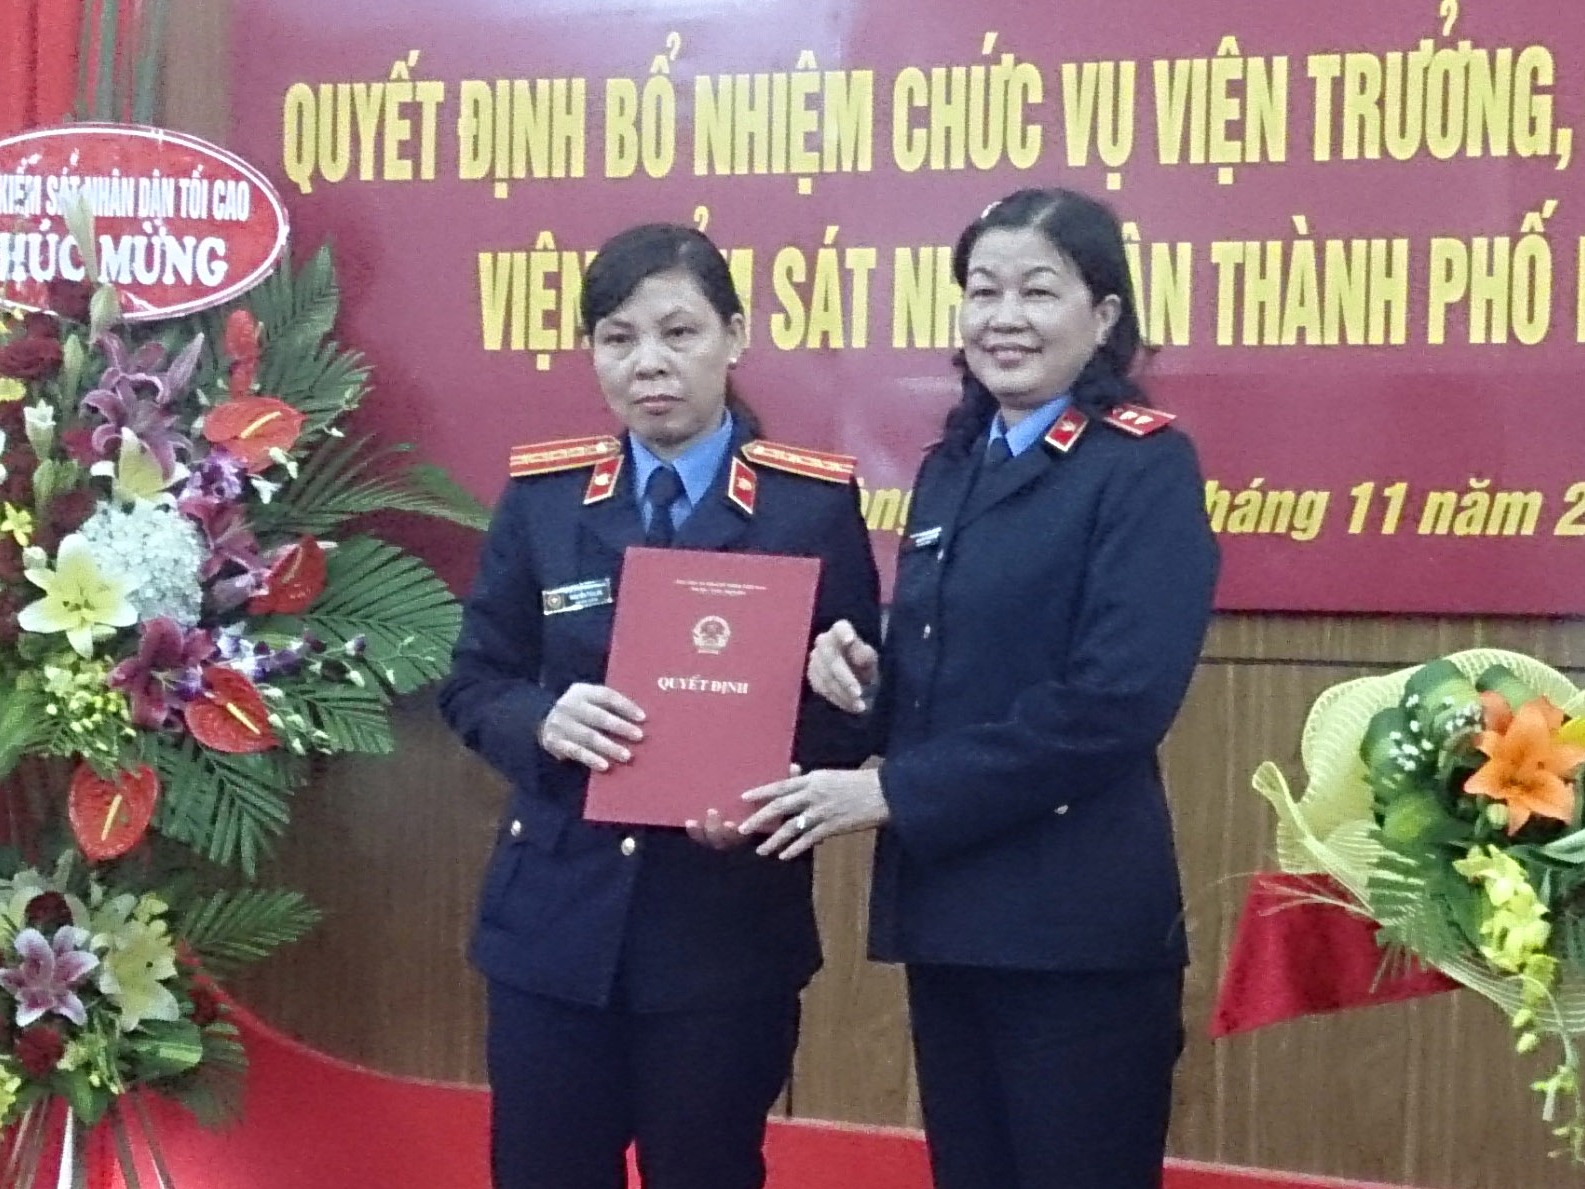  Đồng chí Nguyễn Thị Thủy Khiêm, Phó Viện trưởng VKSNDTC trao Quyết định bổ nhiệm chức vụ Viện trưởng VKSND TP. Hải Phòng.